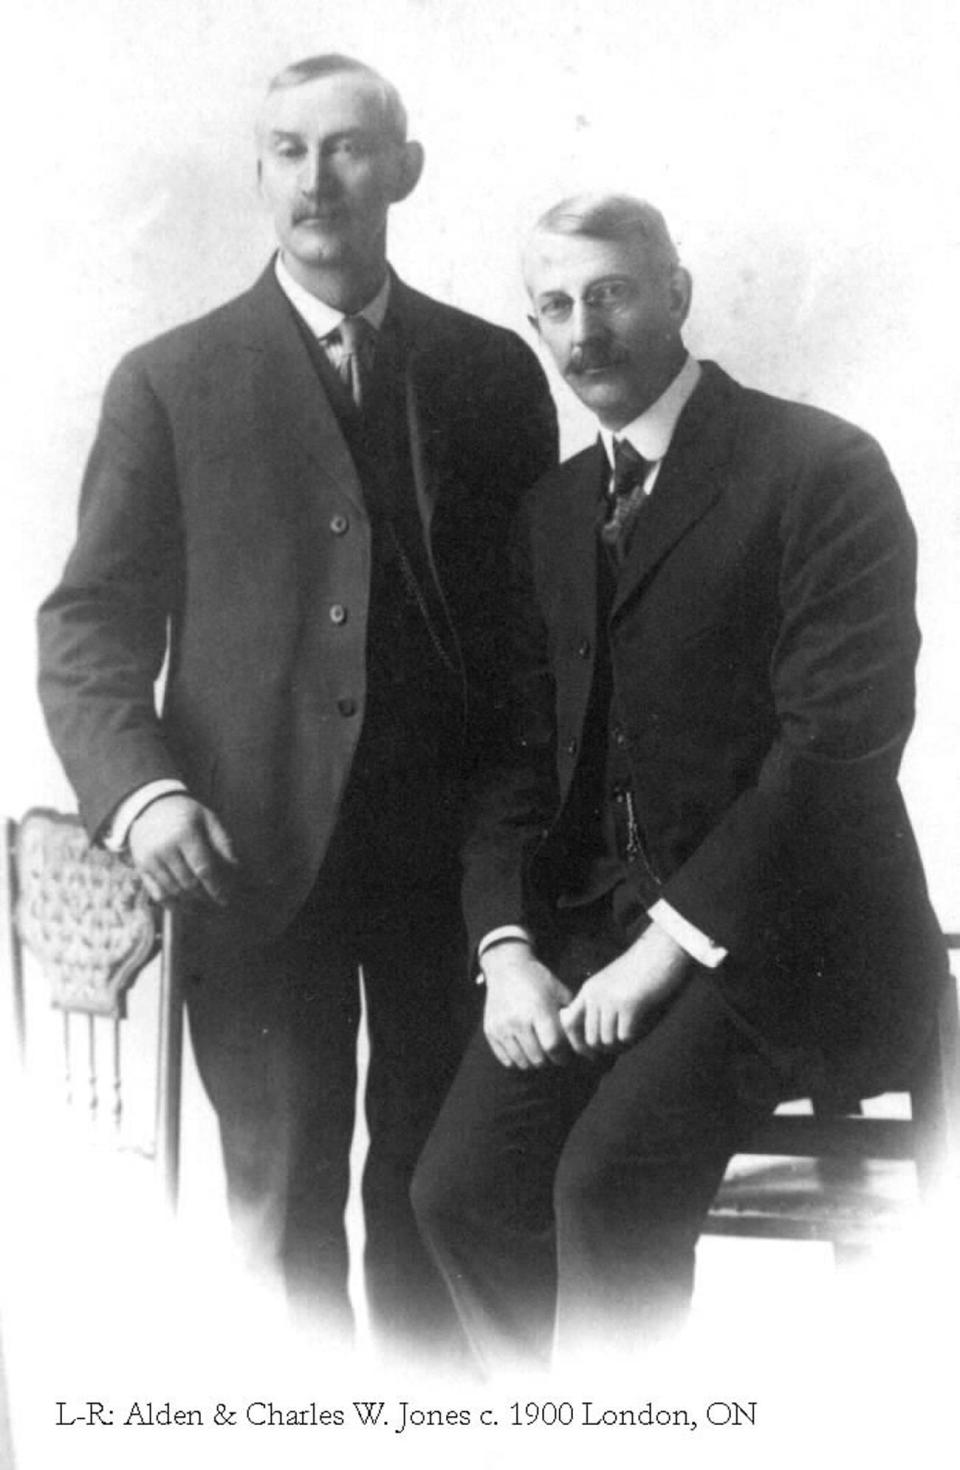 Alden and Charles W. Jones